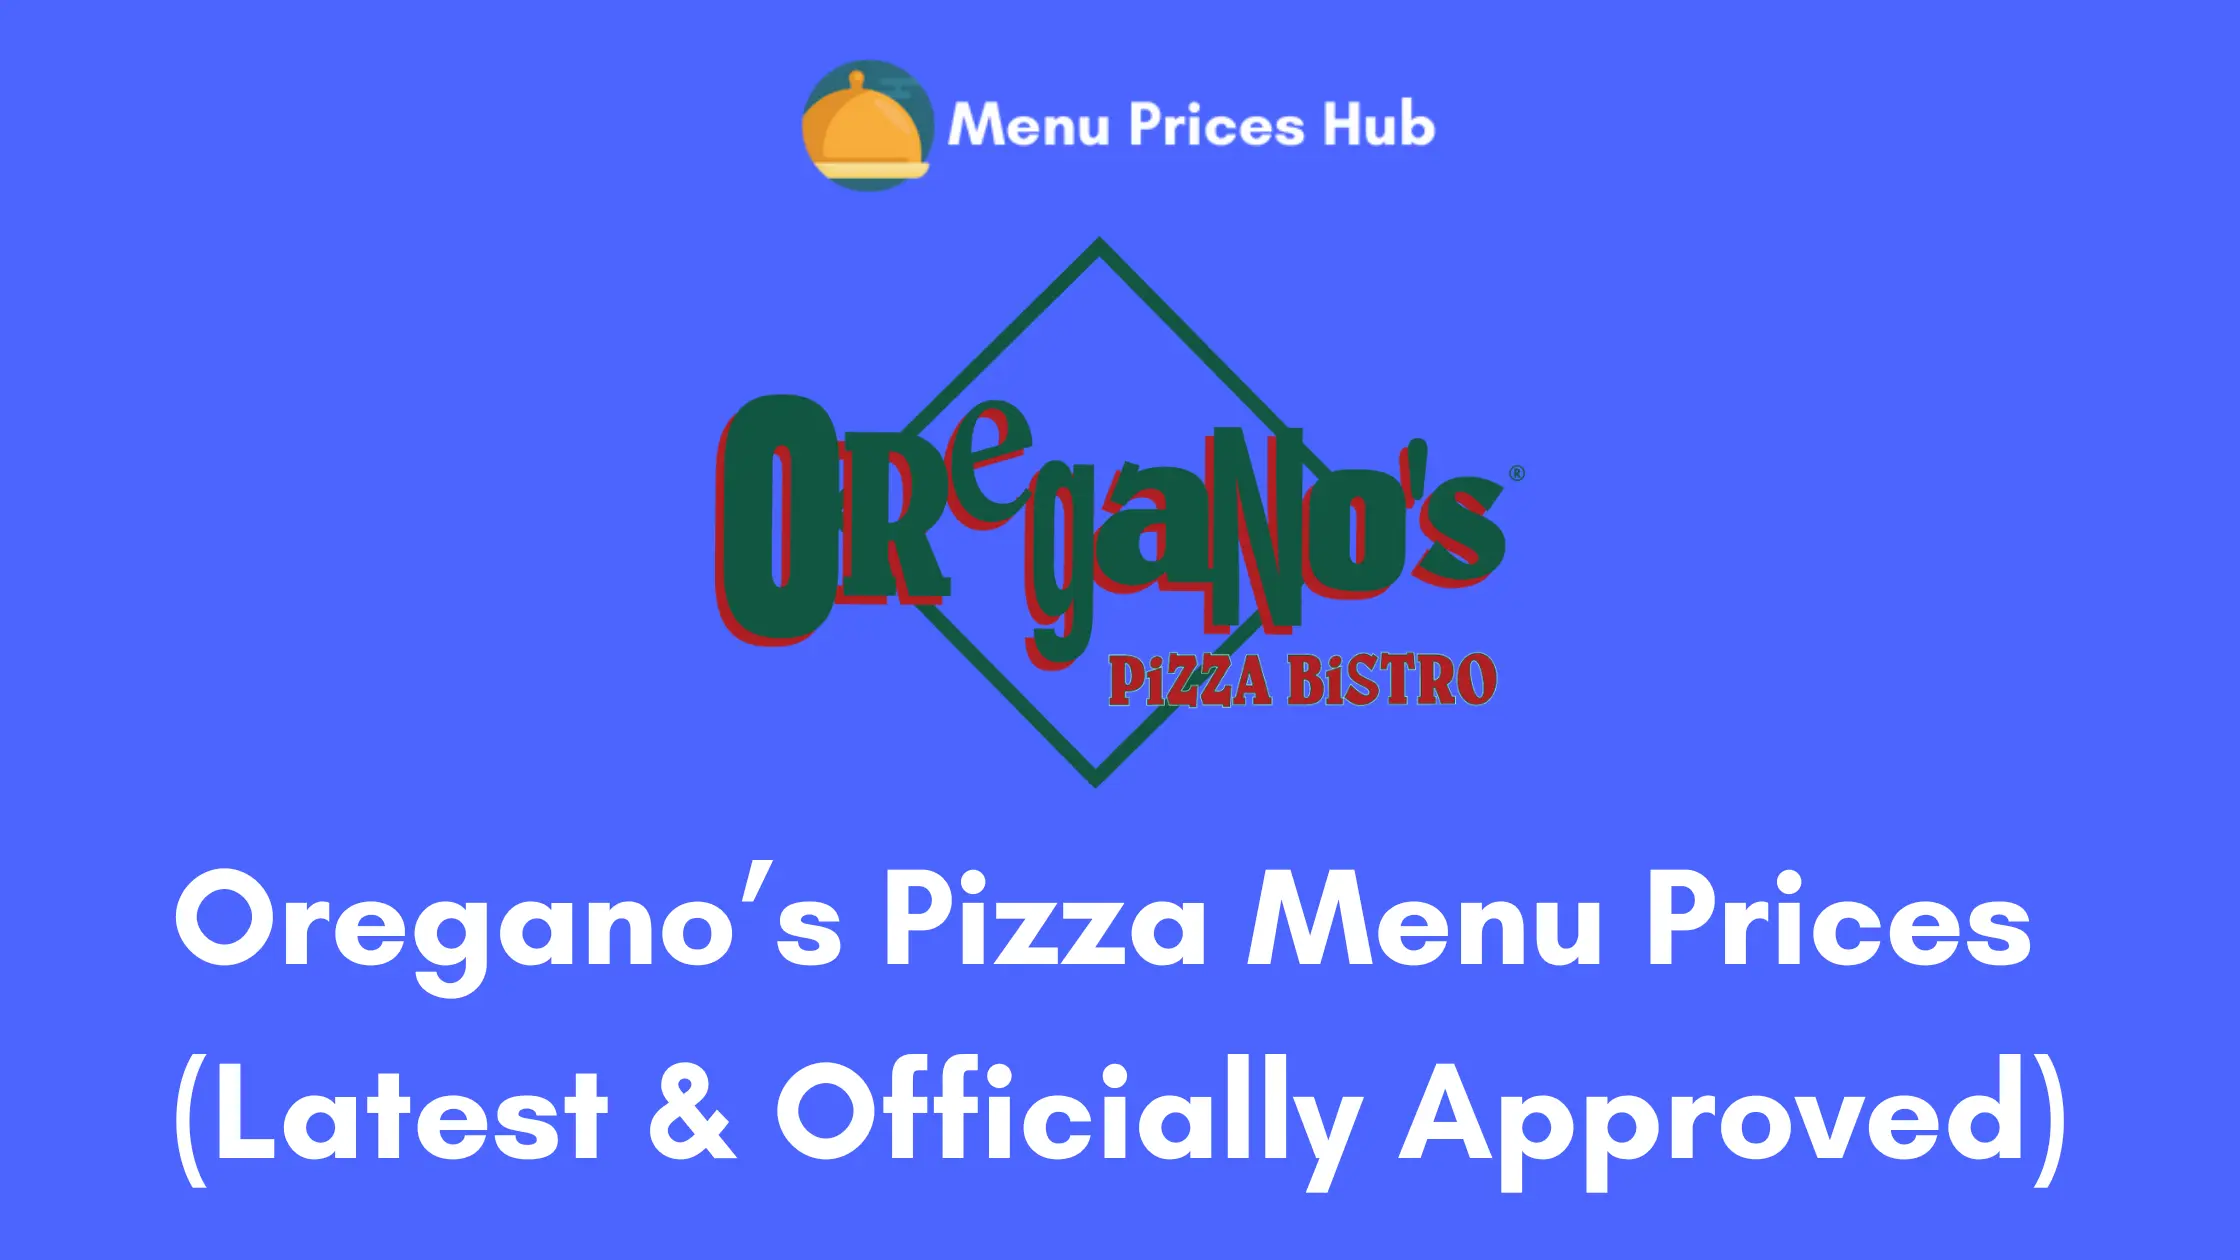 oreganos pizza menu prices